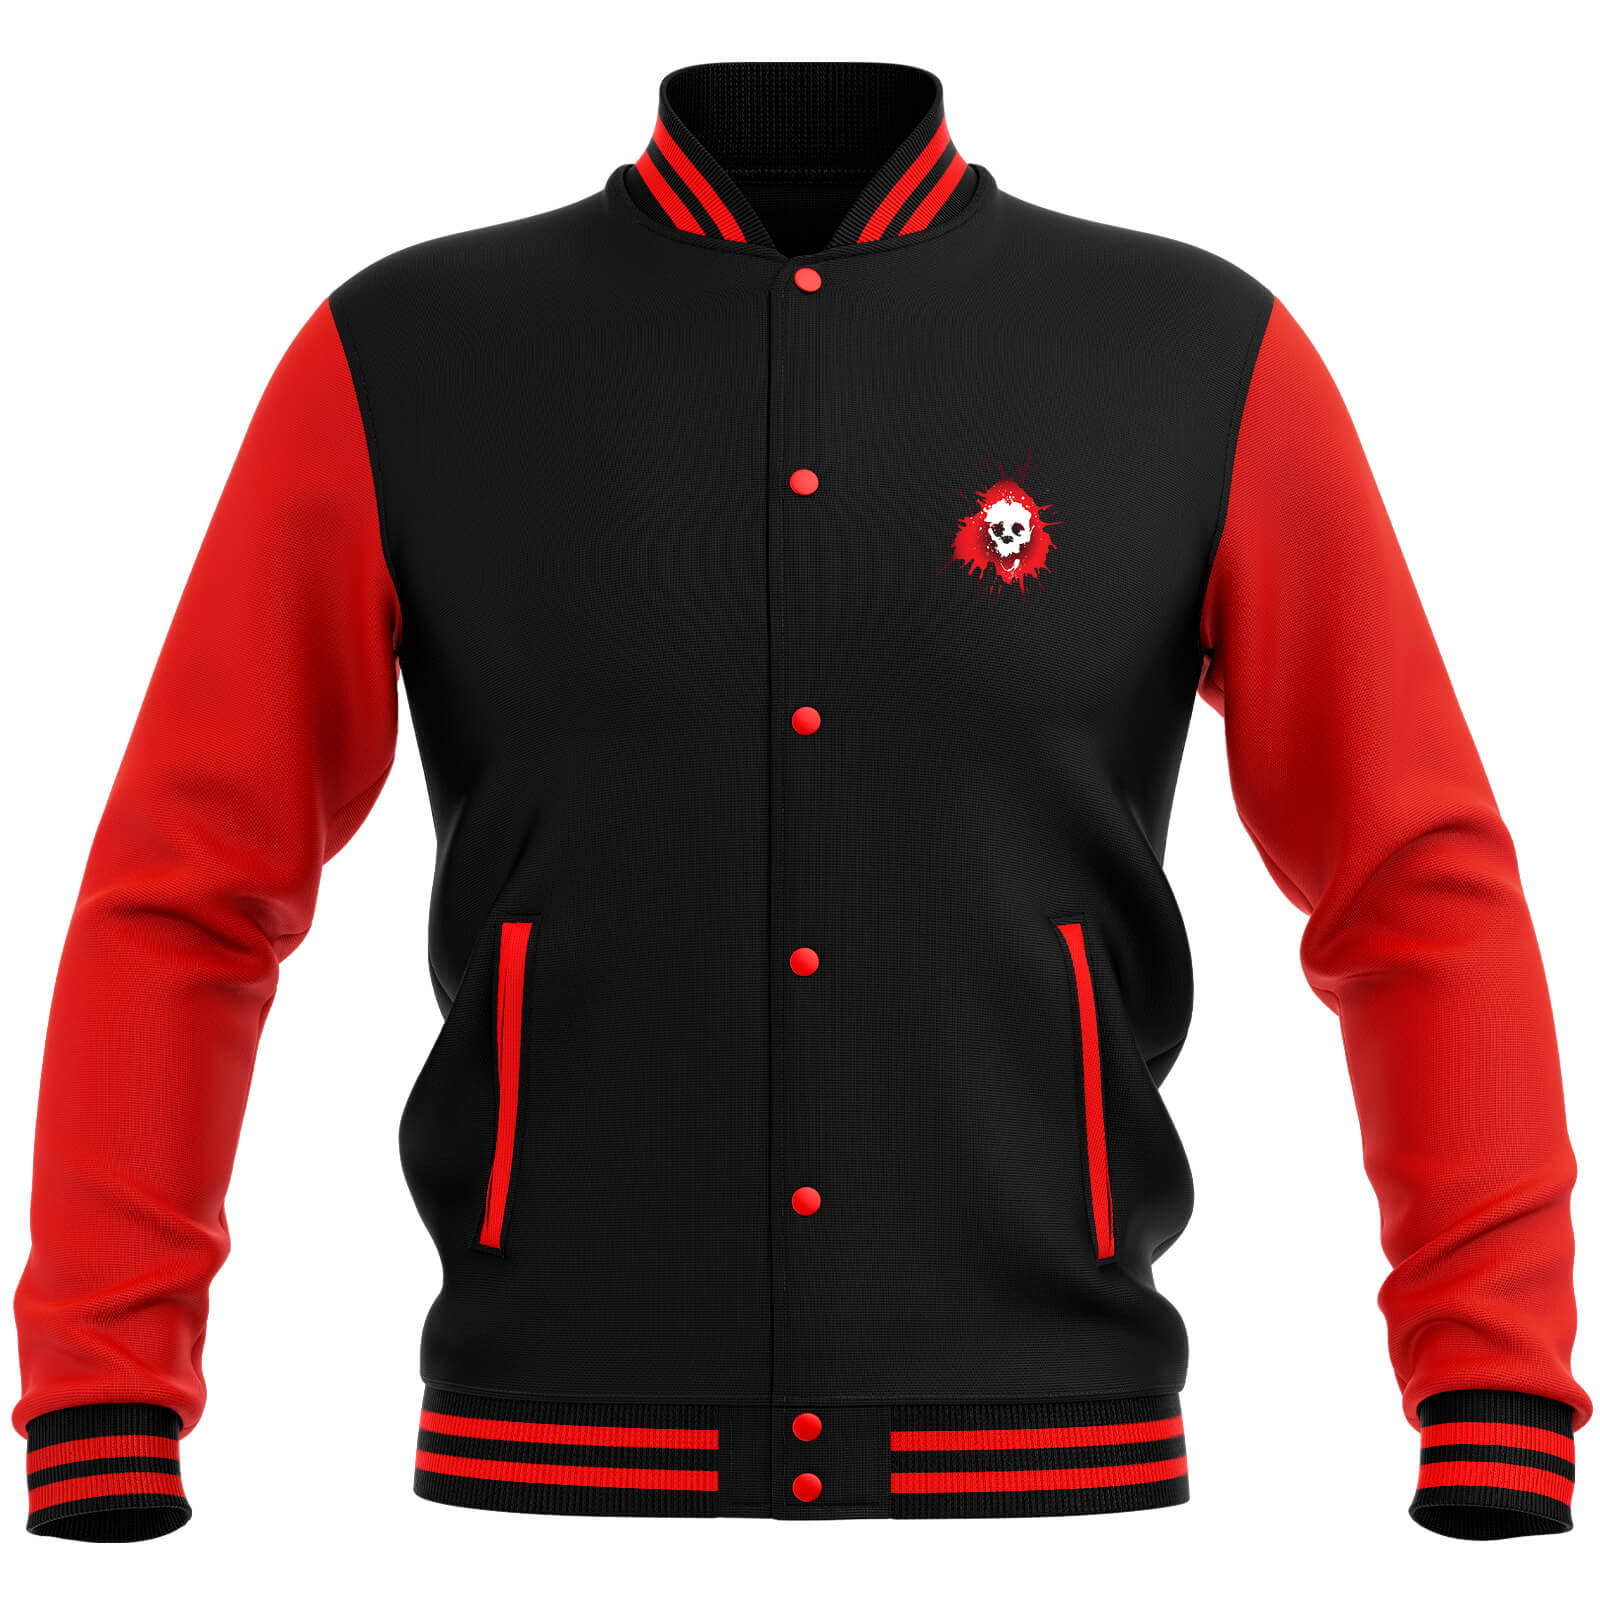 Skullsplat Varsity Jacket - Red/Black - XL - Black